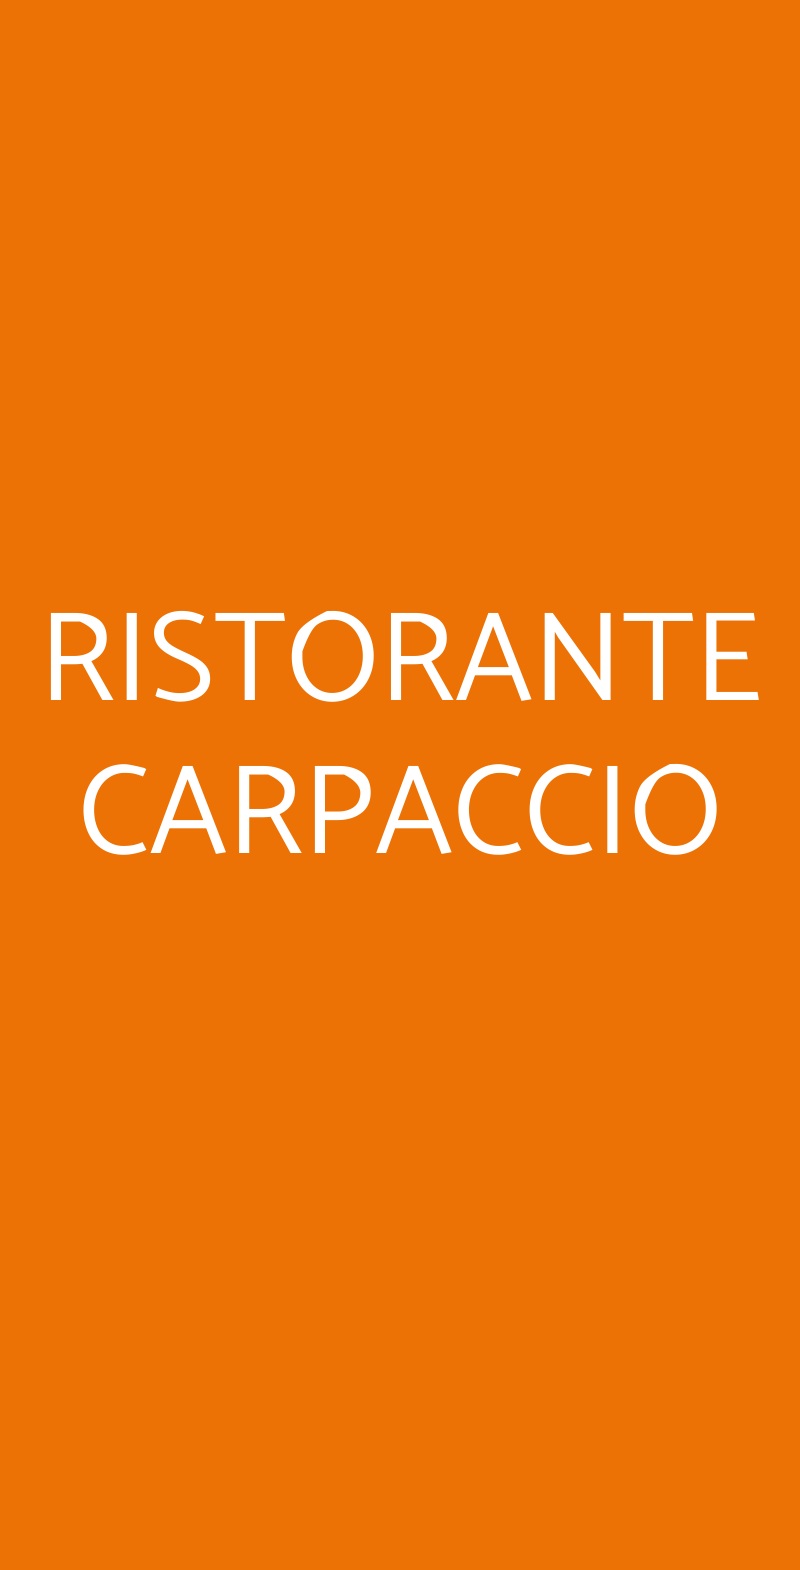 RISTORANTE CARPACCIO Venezia menù 1 pagina